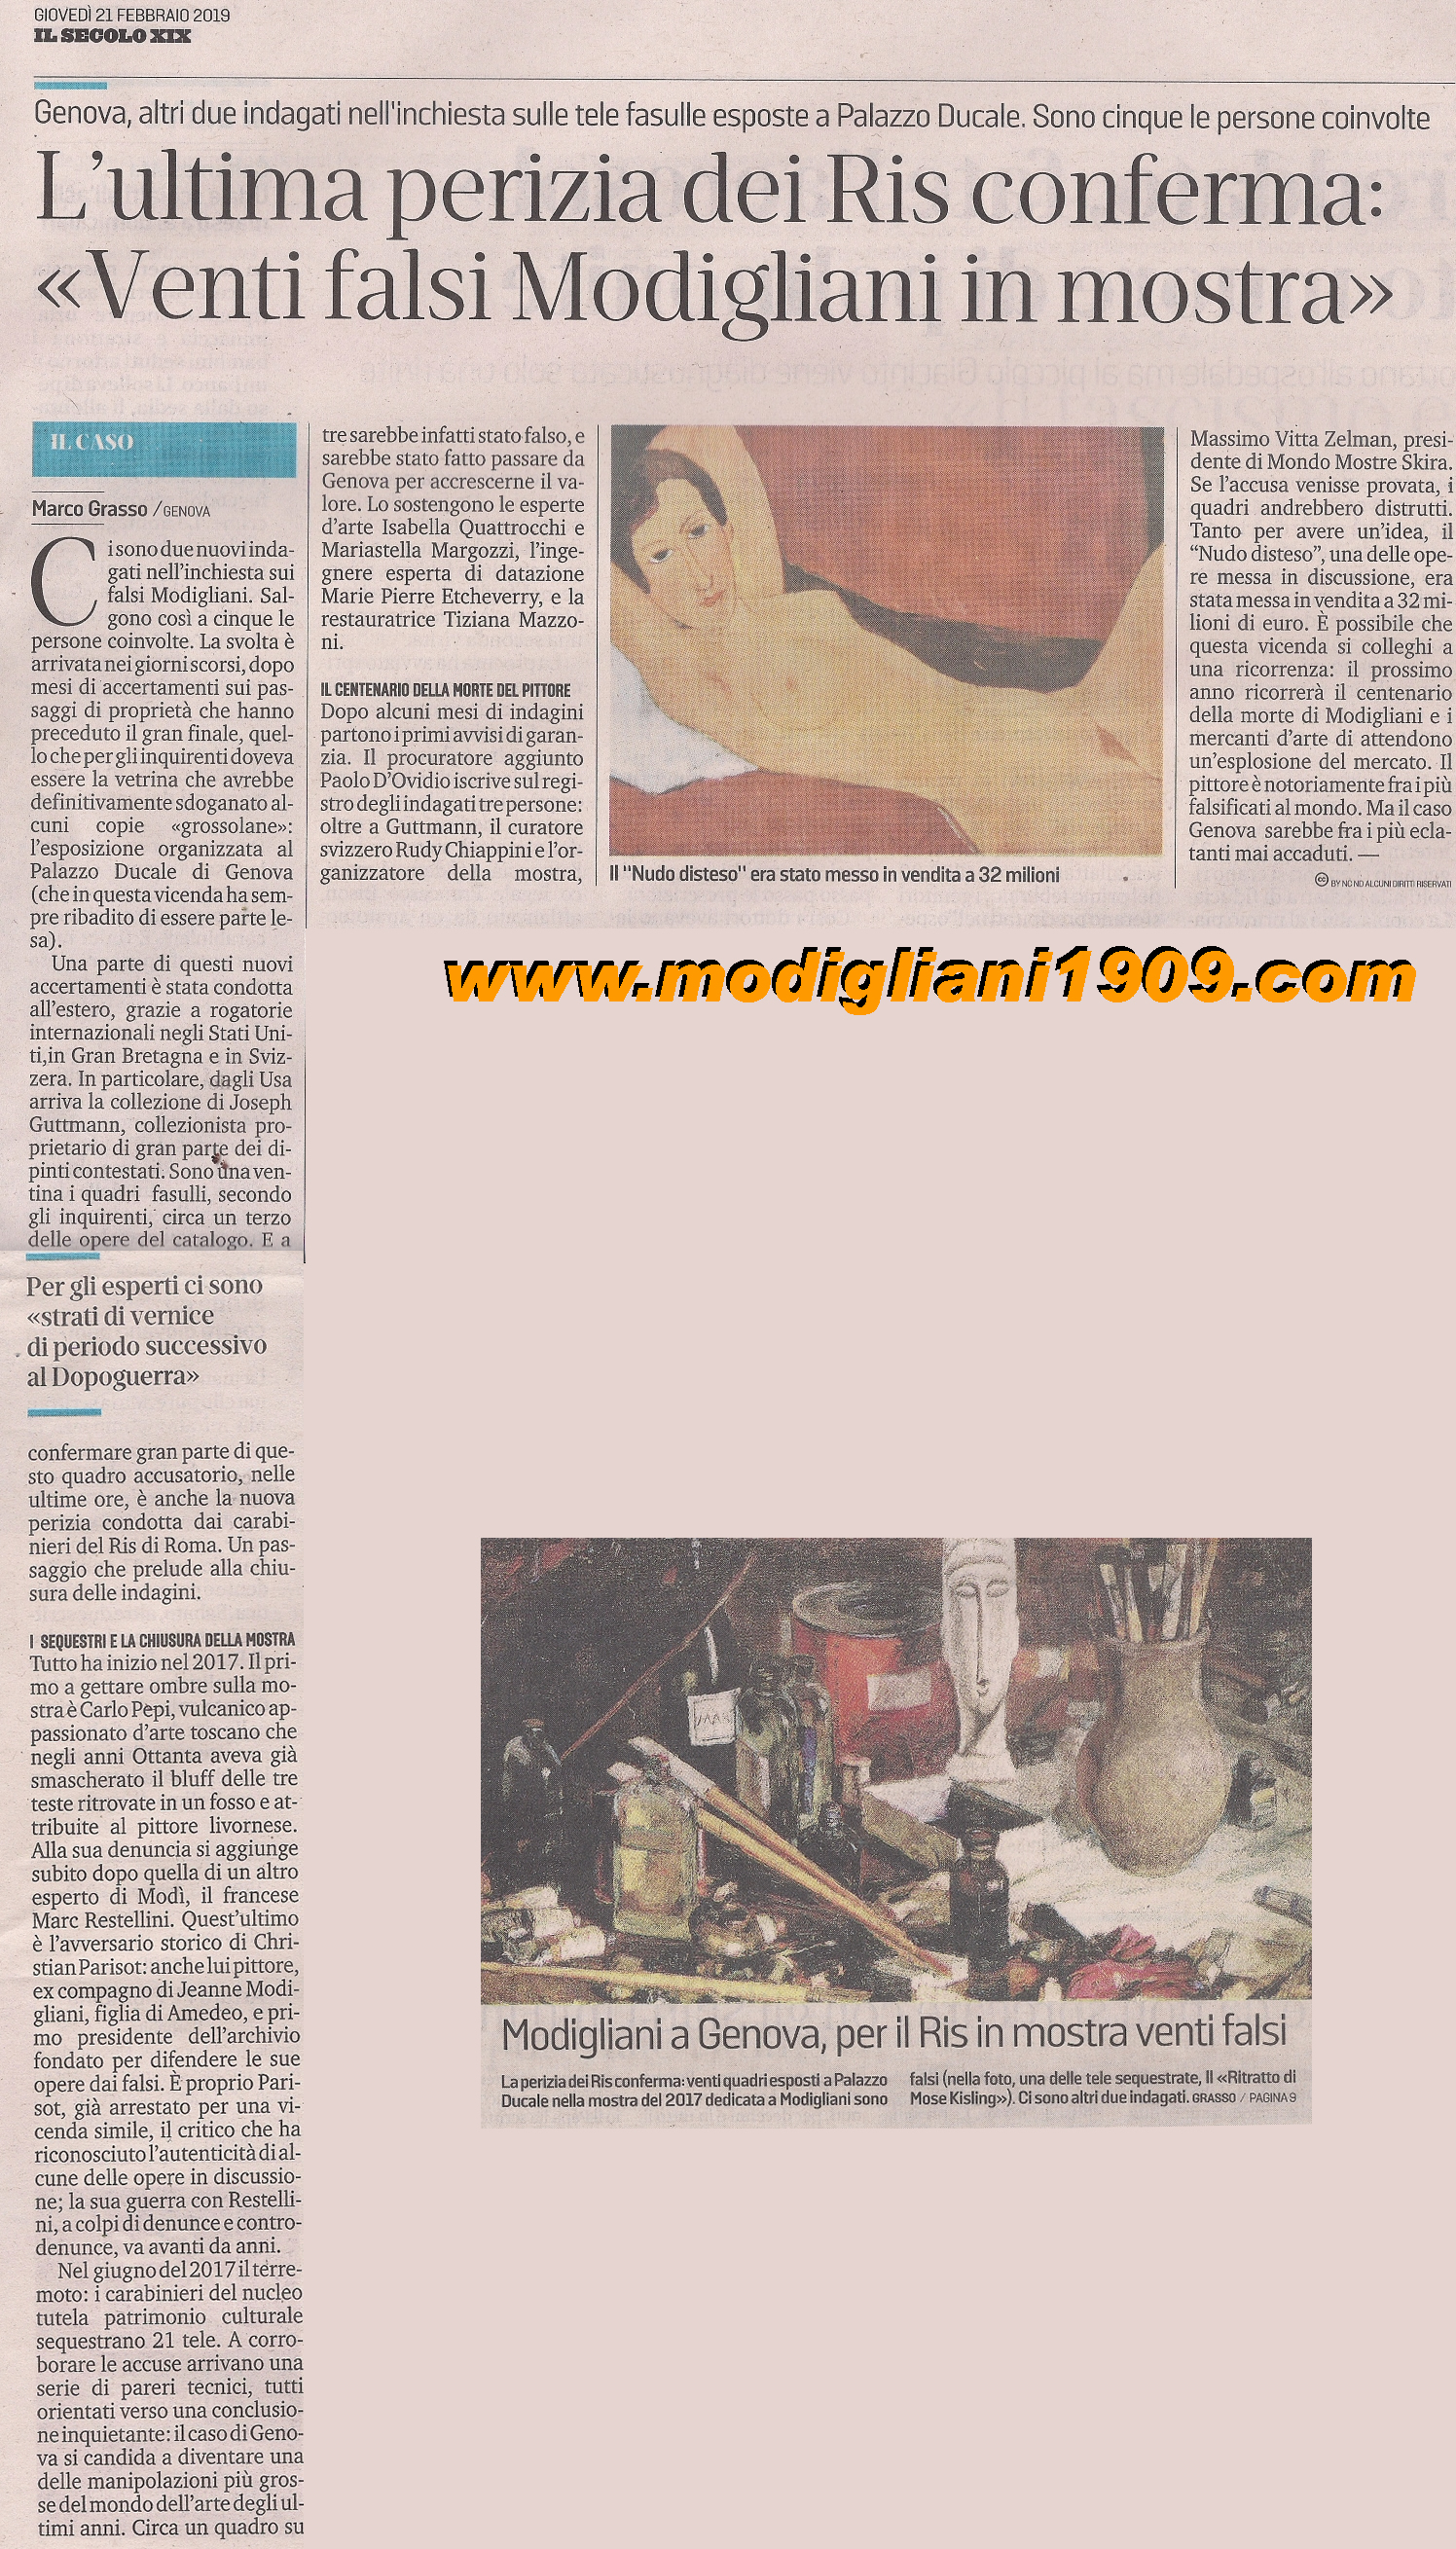 L'ultima perizia dei Ris di Roma conferma: Venti falsi Modigliani in mostra